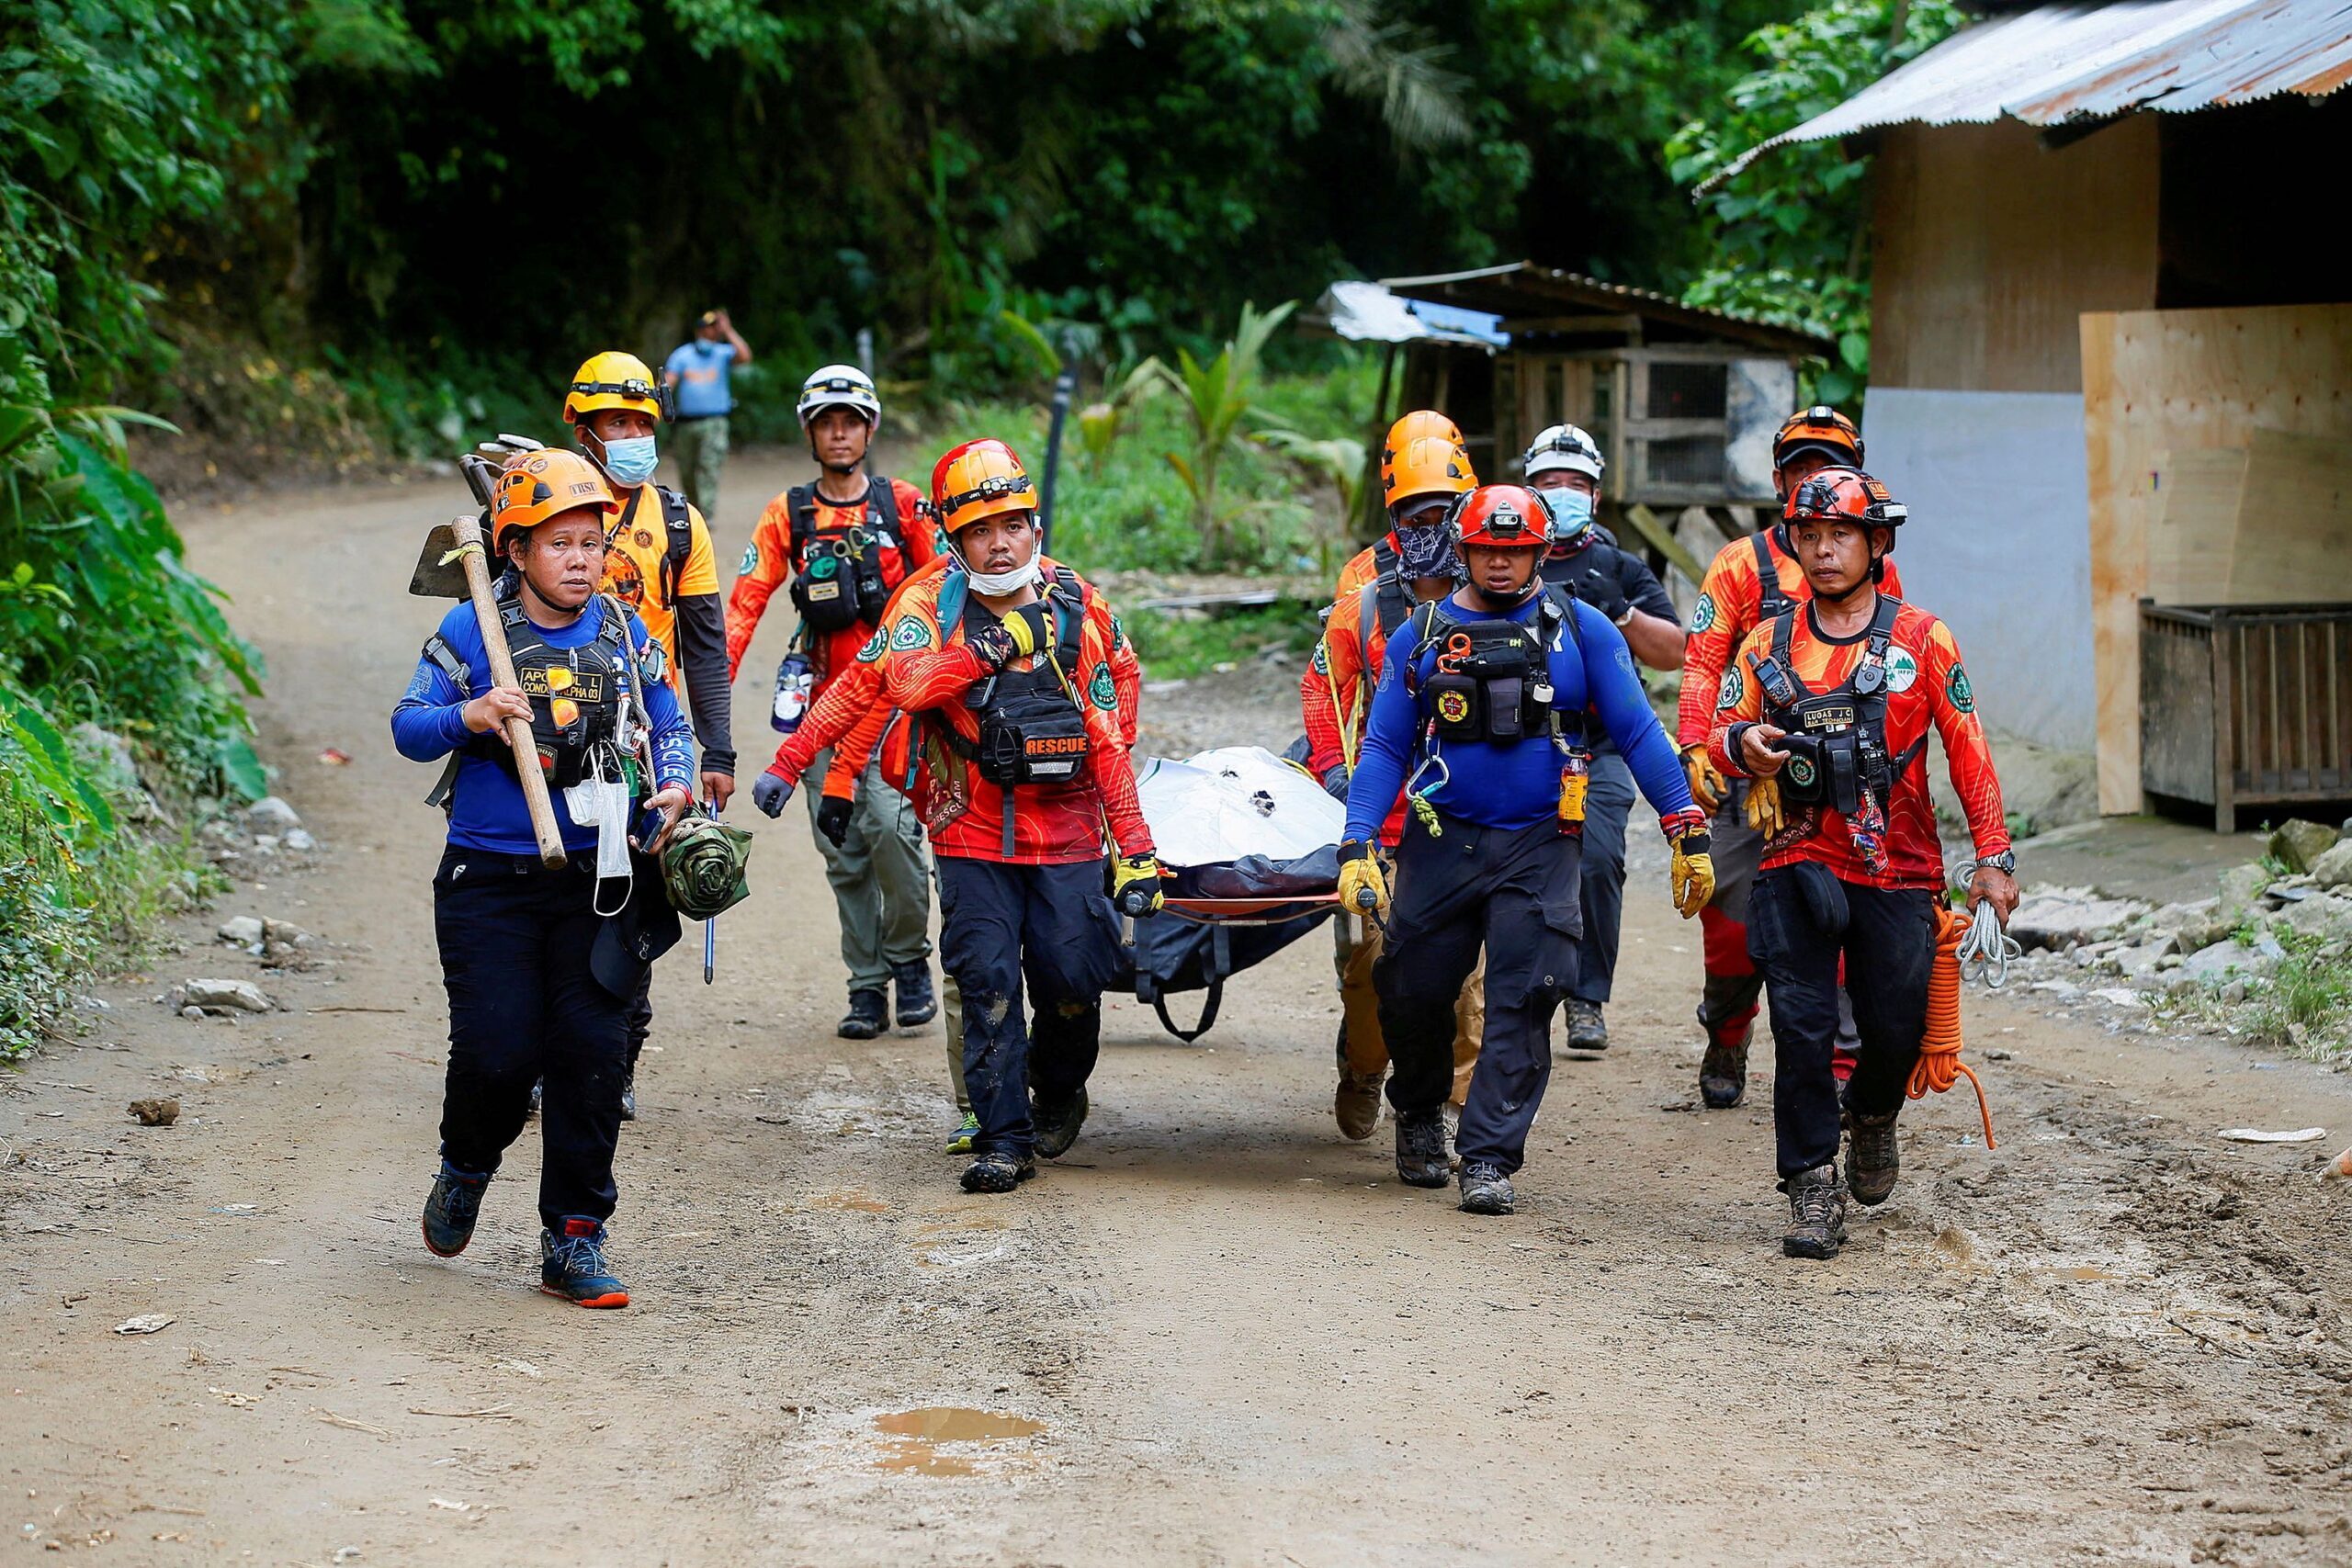 Davao de Oro landslide death toll climbs to 54